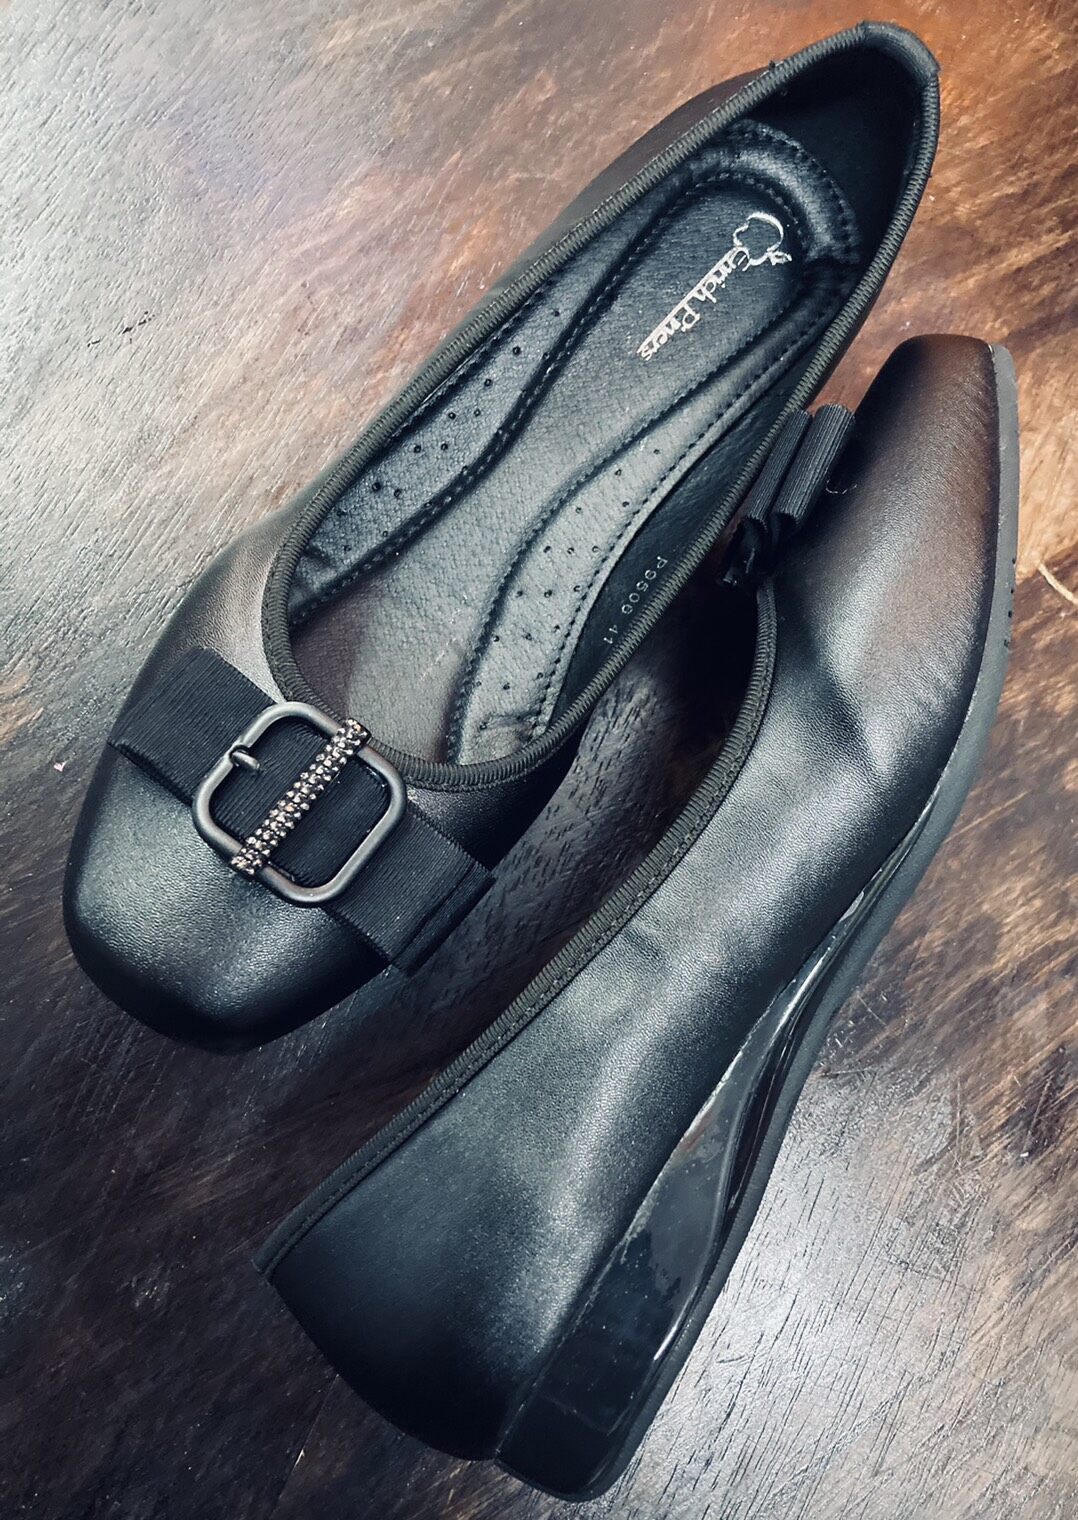 ลดราคาพิเศษ รองเท้าคัชชู สุขภาพ คัชชูส้นเตี้ย พื้นนุ่ม ใส่สบาย หน้ากว้าง หนังนิ่ม มาใหม่ล่าสุด มี2 สี ดำ กับแทน size 36-41